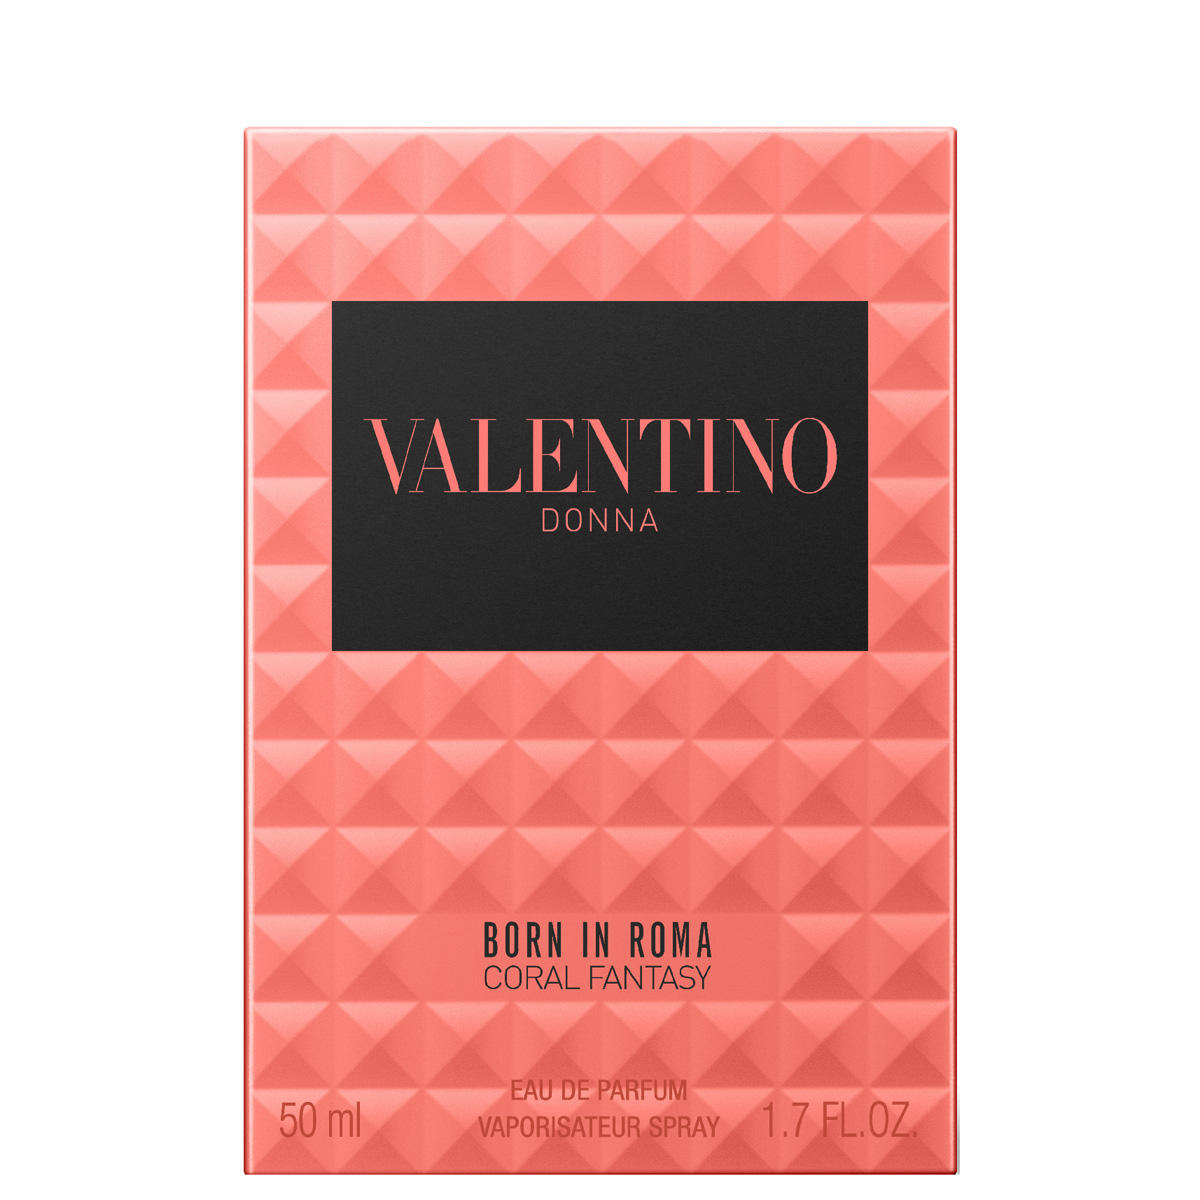 Valentino Donna Born In Roma Coral Fantasy Eau de Parfum 50 ml - 3